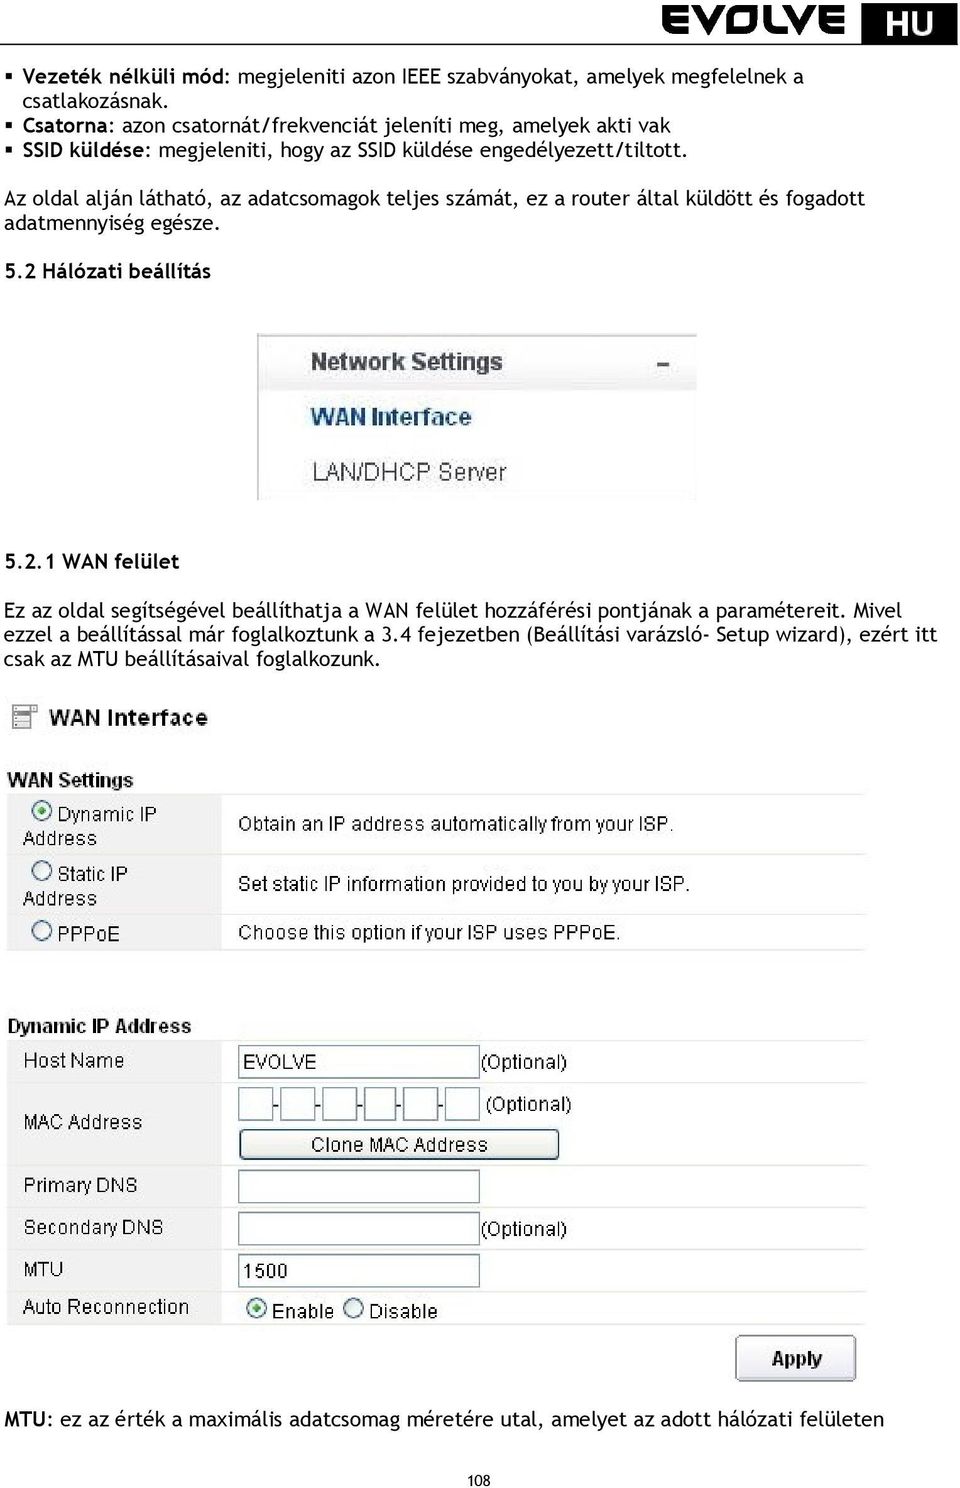 WR150N. Vezeték nélküli Wi-Fi router beépített 4-portos switch-csel.  Használati útmutató - PDF Free Download